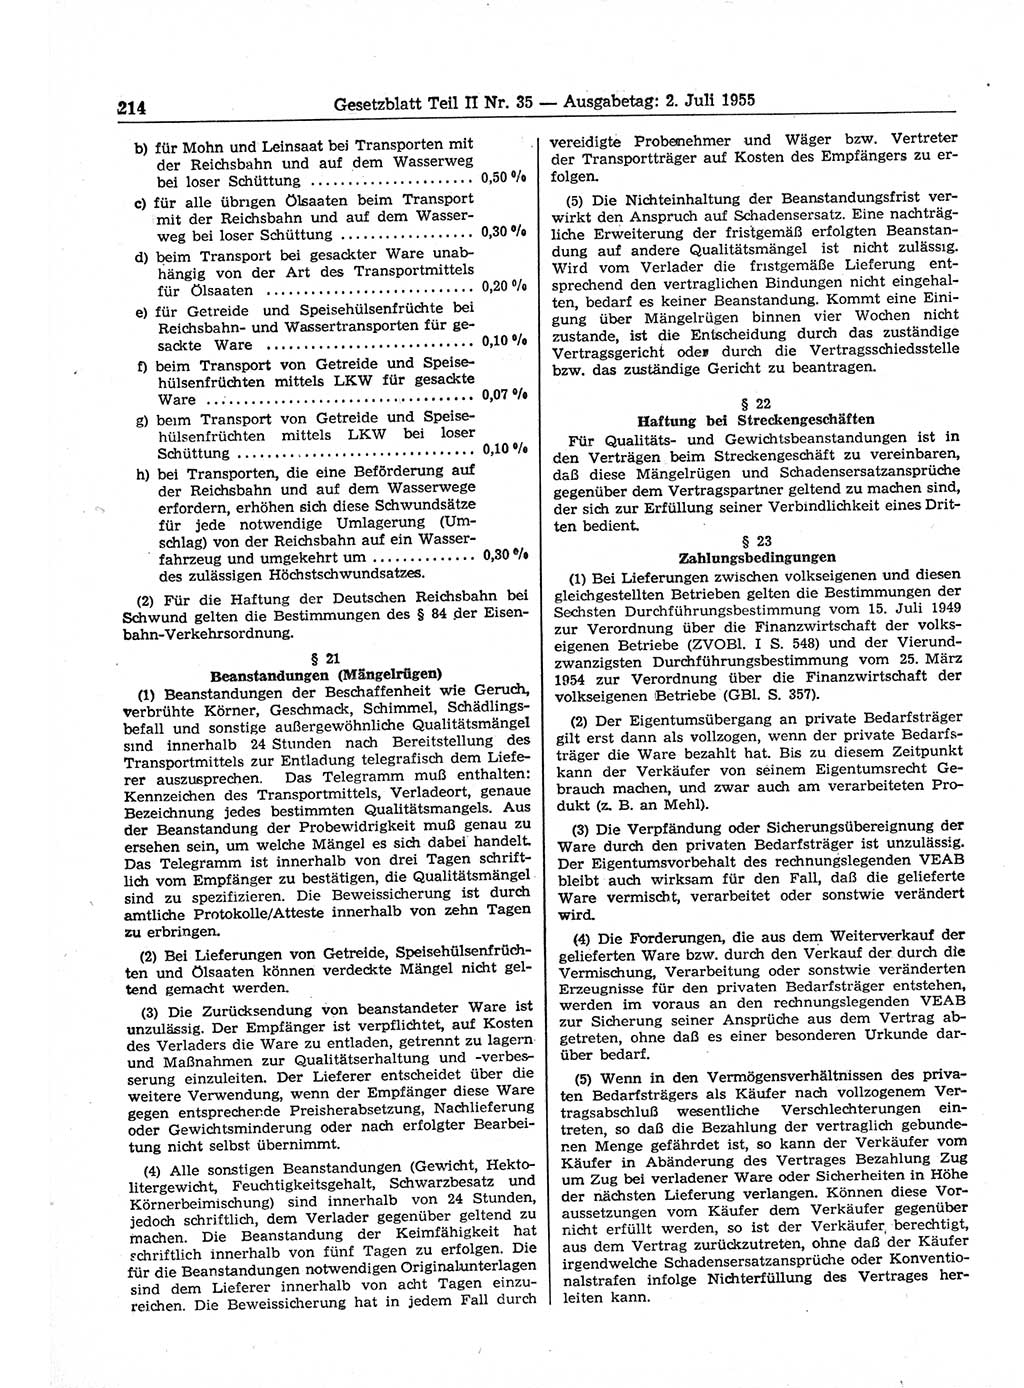 Gesetzblatt (GBl.) der Deutschen Demokratischen Republik (DDR) Teil ⅠⅠ 1955, Seite 214 (GBl. DDR ⅠⅠ 1955, S. 214)